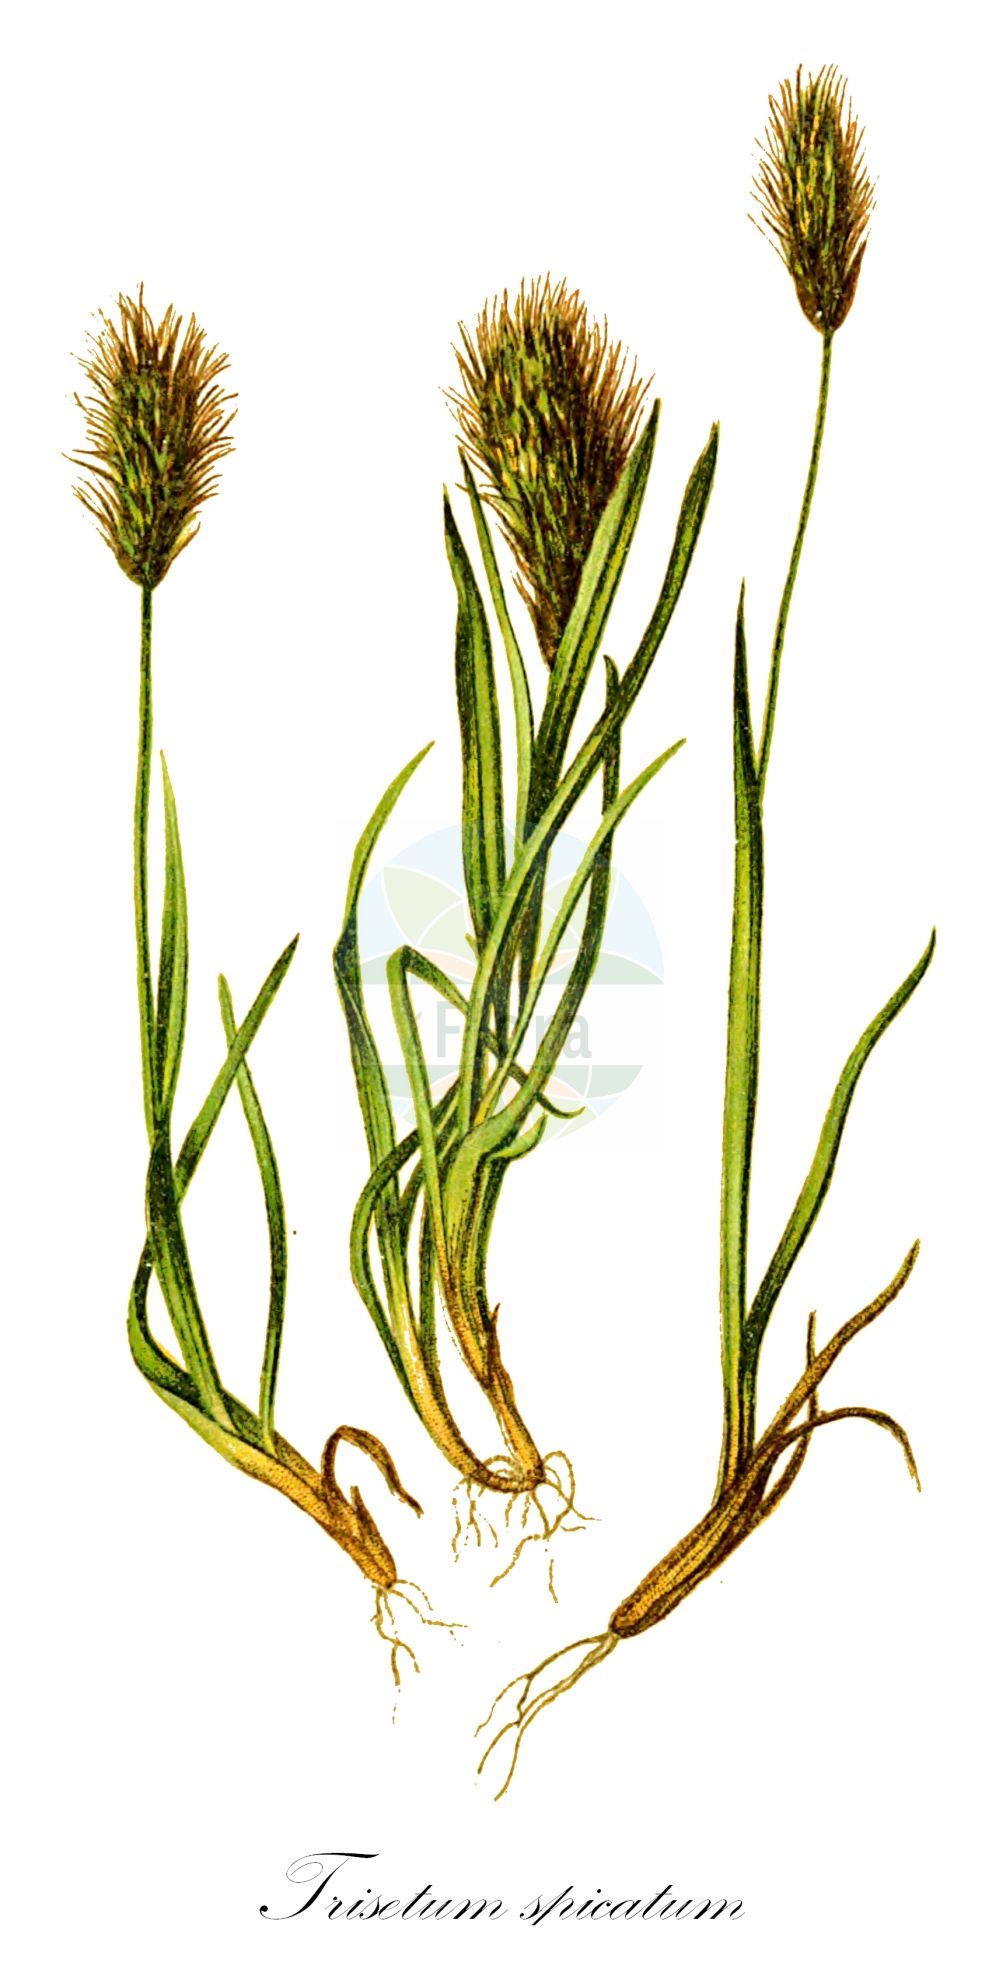 Historische Abbildung von Trisetum spicatum (Ähren-Goldhafer - Spike Trisetum). Das Bild zeigt Blatt, Bluete, Frucht und Same. ---- Historical Drawing of Trisetum spicatum (Ähren-Goldhafer - Spike Trisetum). The image is showing leaf, flower, fruit and seed.(Trisetum spicatum,Ähren-Goldhafer,Spike Trisetum,Aira spicata,Avena airoides,Trisetaria spicata,Trisetum spicatum,Trisetum subspicatum,Ähren-Goldhafer,Ähriger Goldhafer,Spike Trisetum,Bristlegrass,Tall Trisetum,Northern Oatgrass,Spiked Oatgrass,Trisetum,Goldhafer,Oatgrass,Poaceae,Süßgräser,Grass family,Blatt,Bluete,Frucht,Same,leaf,flower,fruit,seed,Hartinger & von Dalla Torre (1806f))